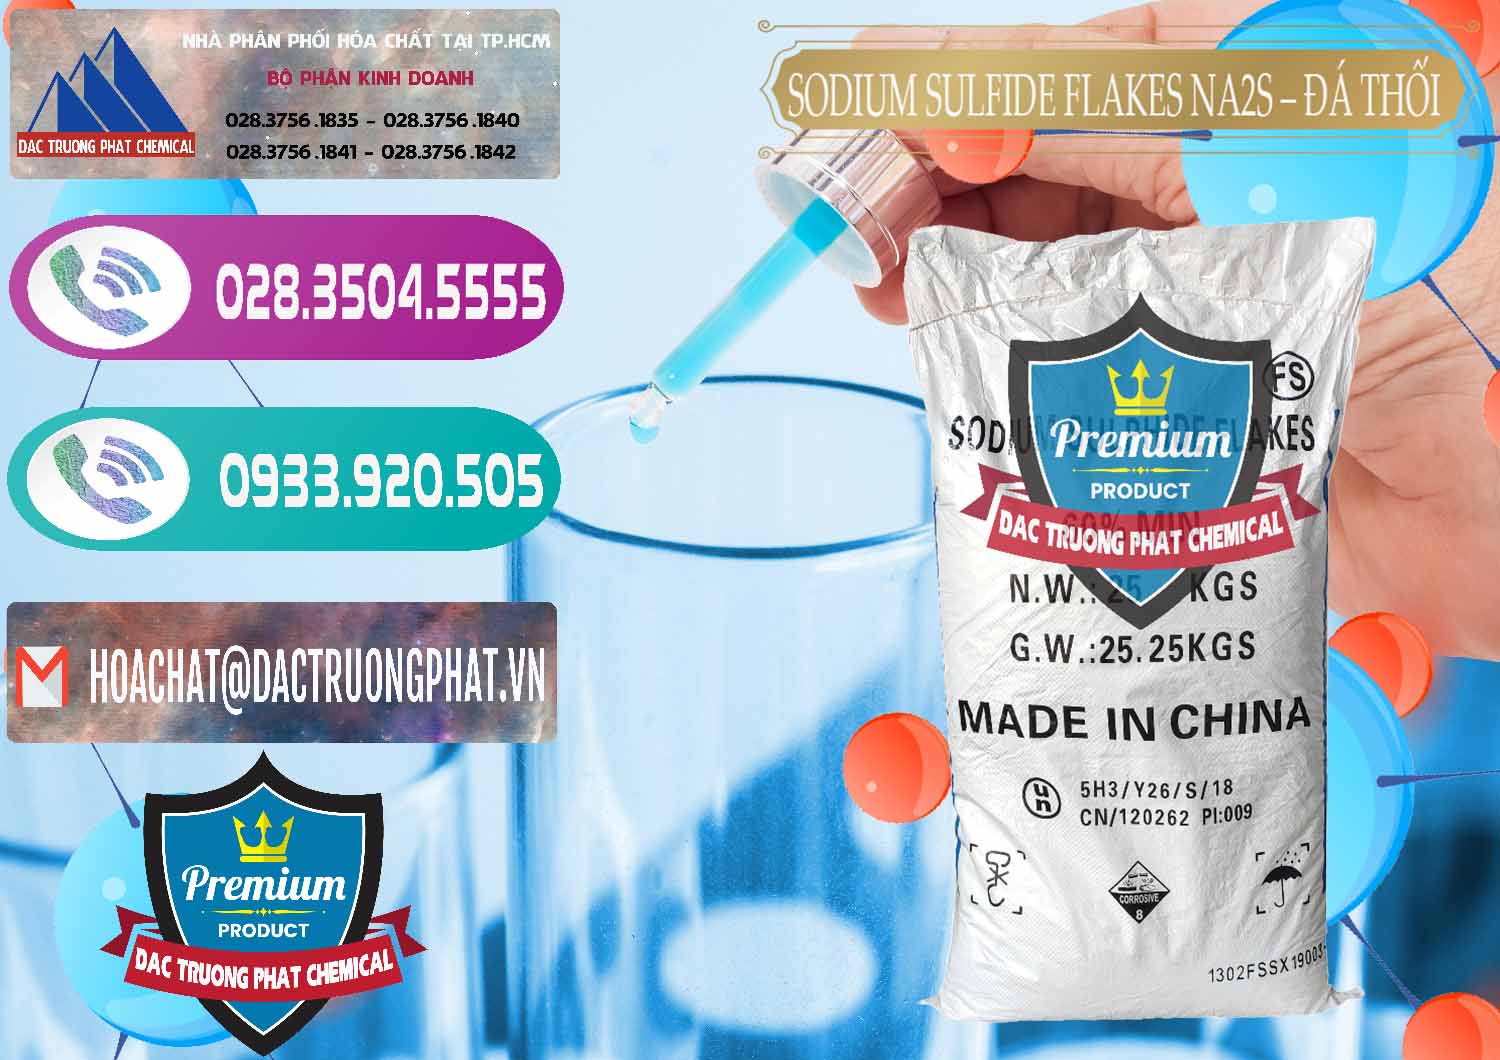 Nơi chuyên kinh doanh & bán Sodium Sulfide Flakes NA2S – Đá Thối Đỏ Trung Quốc China - 0150 - Đơn vị cung cấp - phân phối hóa chất tại TP.HCM - hoachatxulynuoc.com